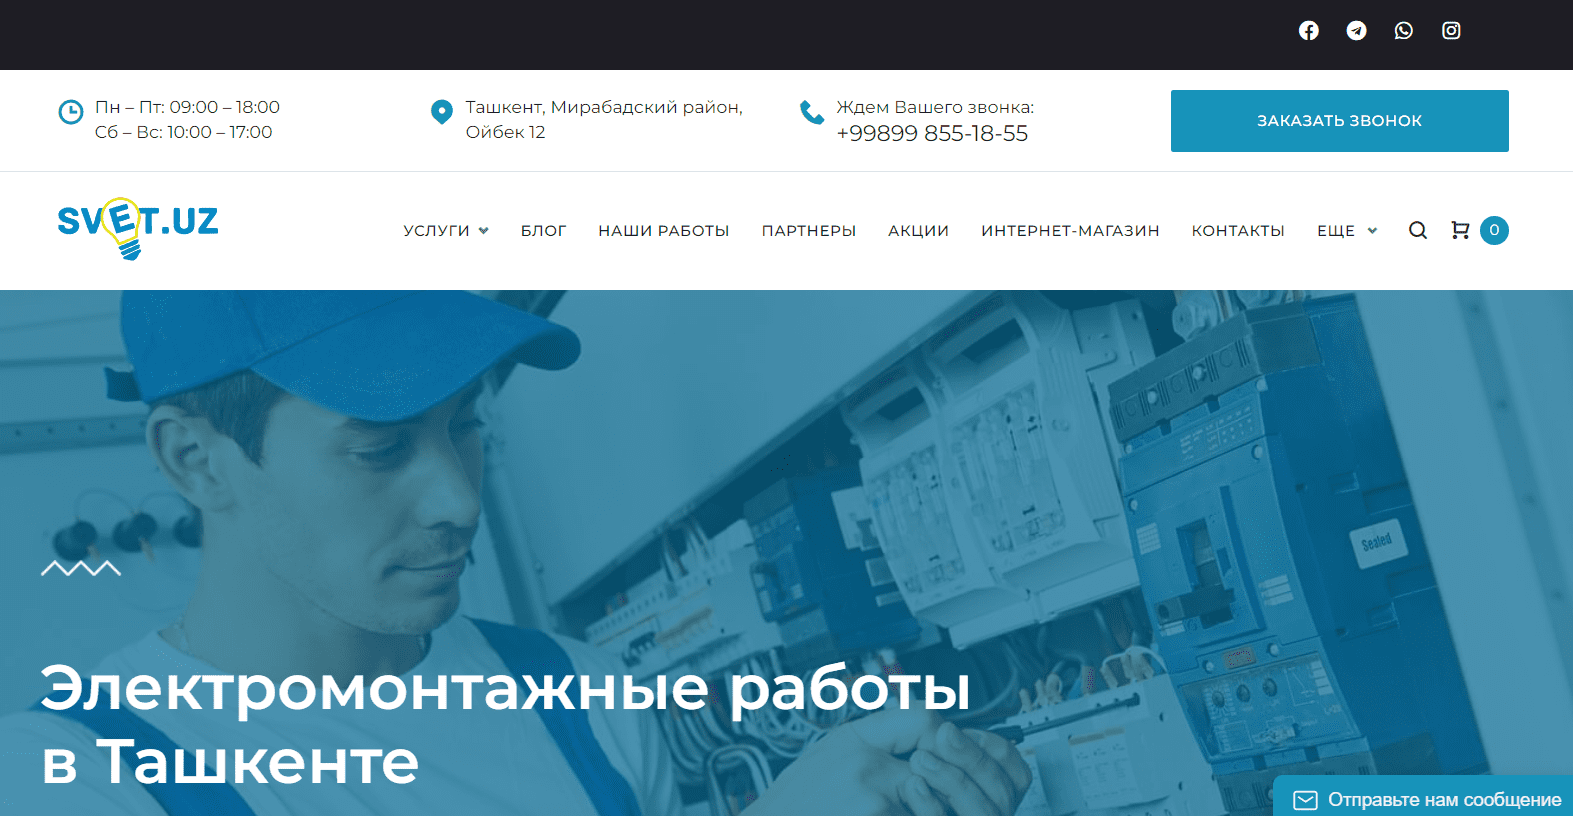 Svet.uz - официальный сайт